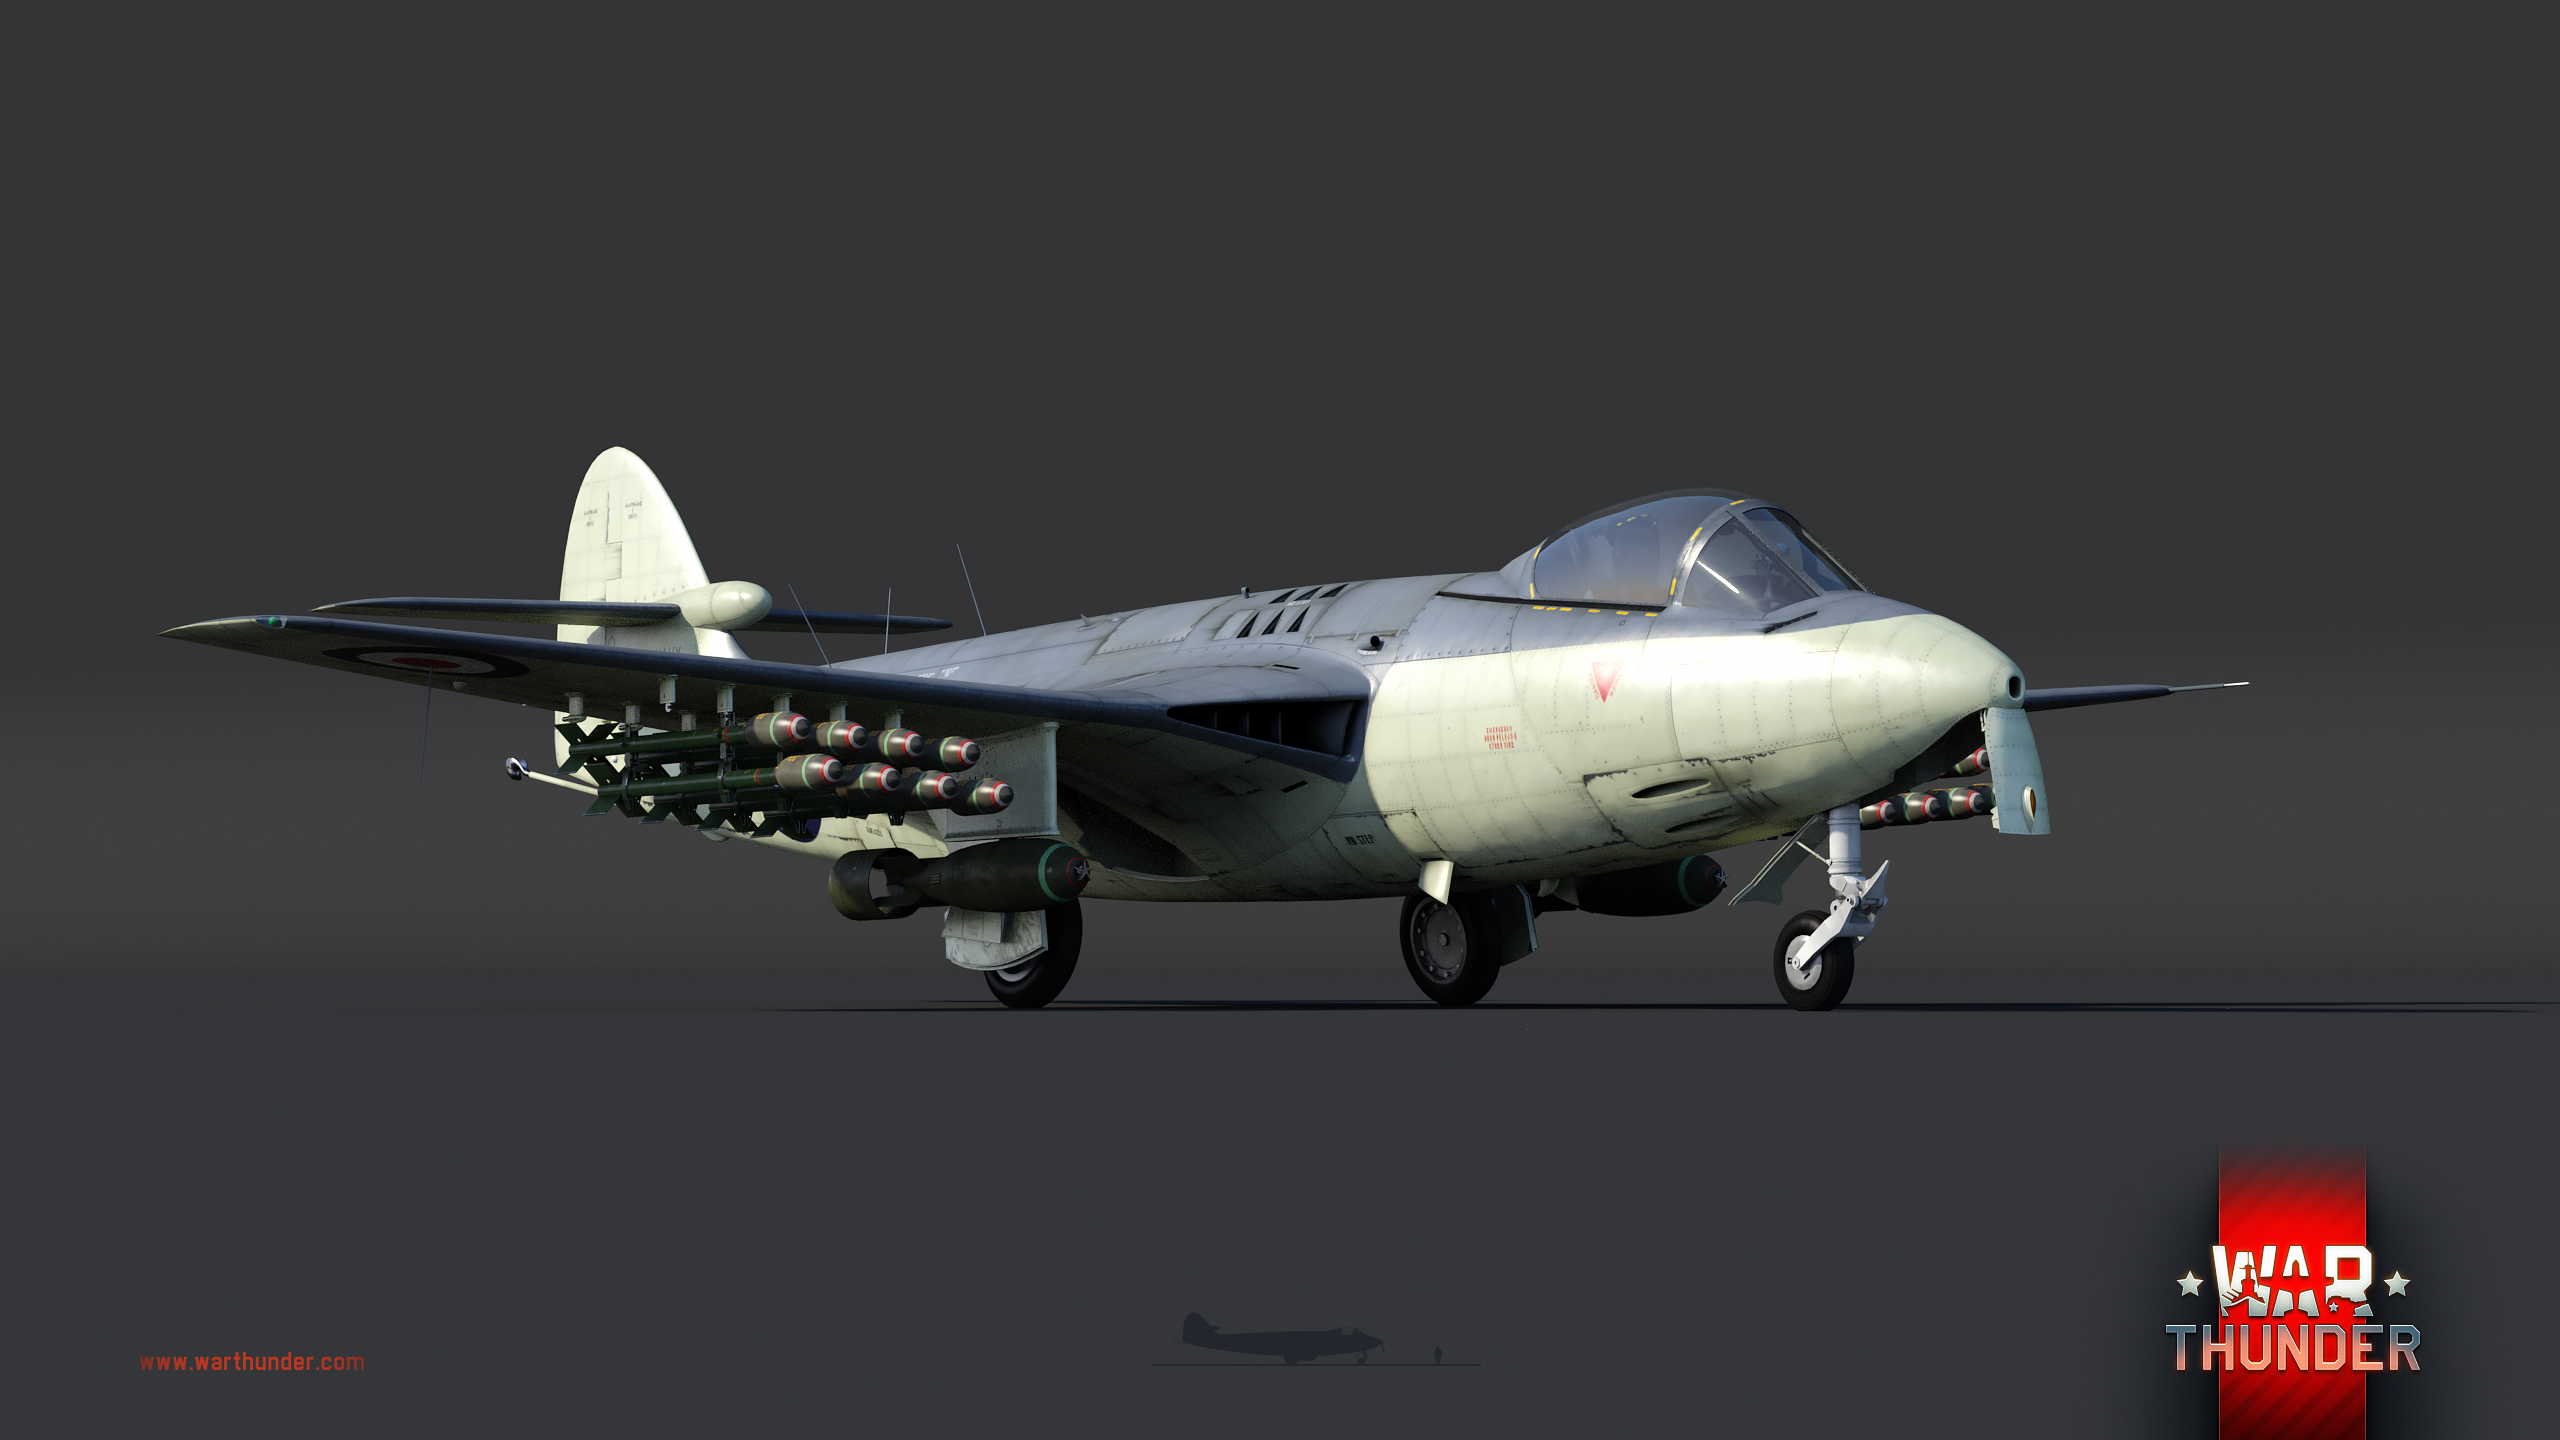 Development Sea Hawk Fga 6 Jet Vulture News War Thunder